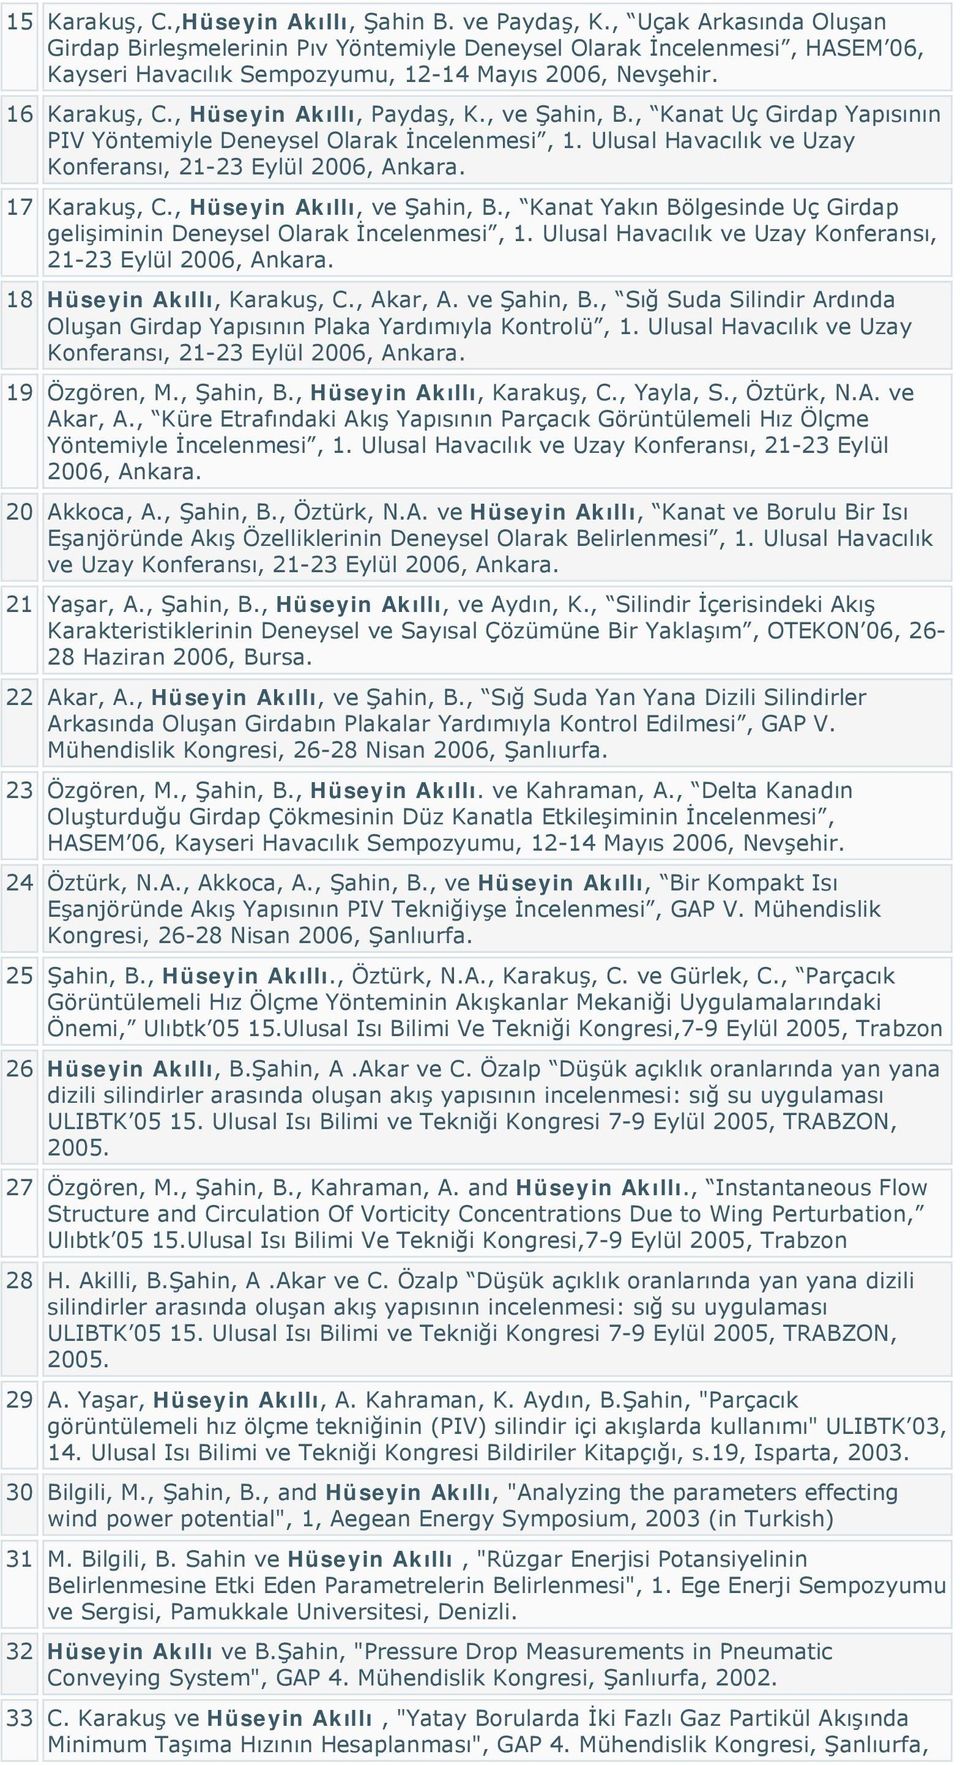 , Hüseyin Akıllı, Paydaş, K., ve Şahin, B., Kanat Uç Girdap Yapısının PIV Yöntemiyle Deneysel Olarak İncelenmesi, 1. Ulusal Havacılık ve Uzay Konferansı, 21-23 Eylül 2006, Ankara. 17 Karakuş, C.